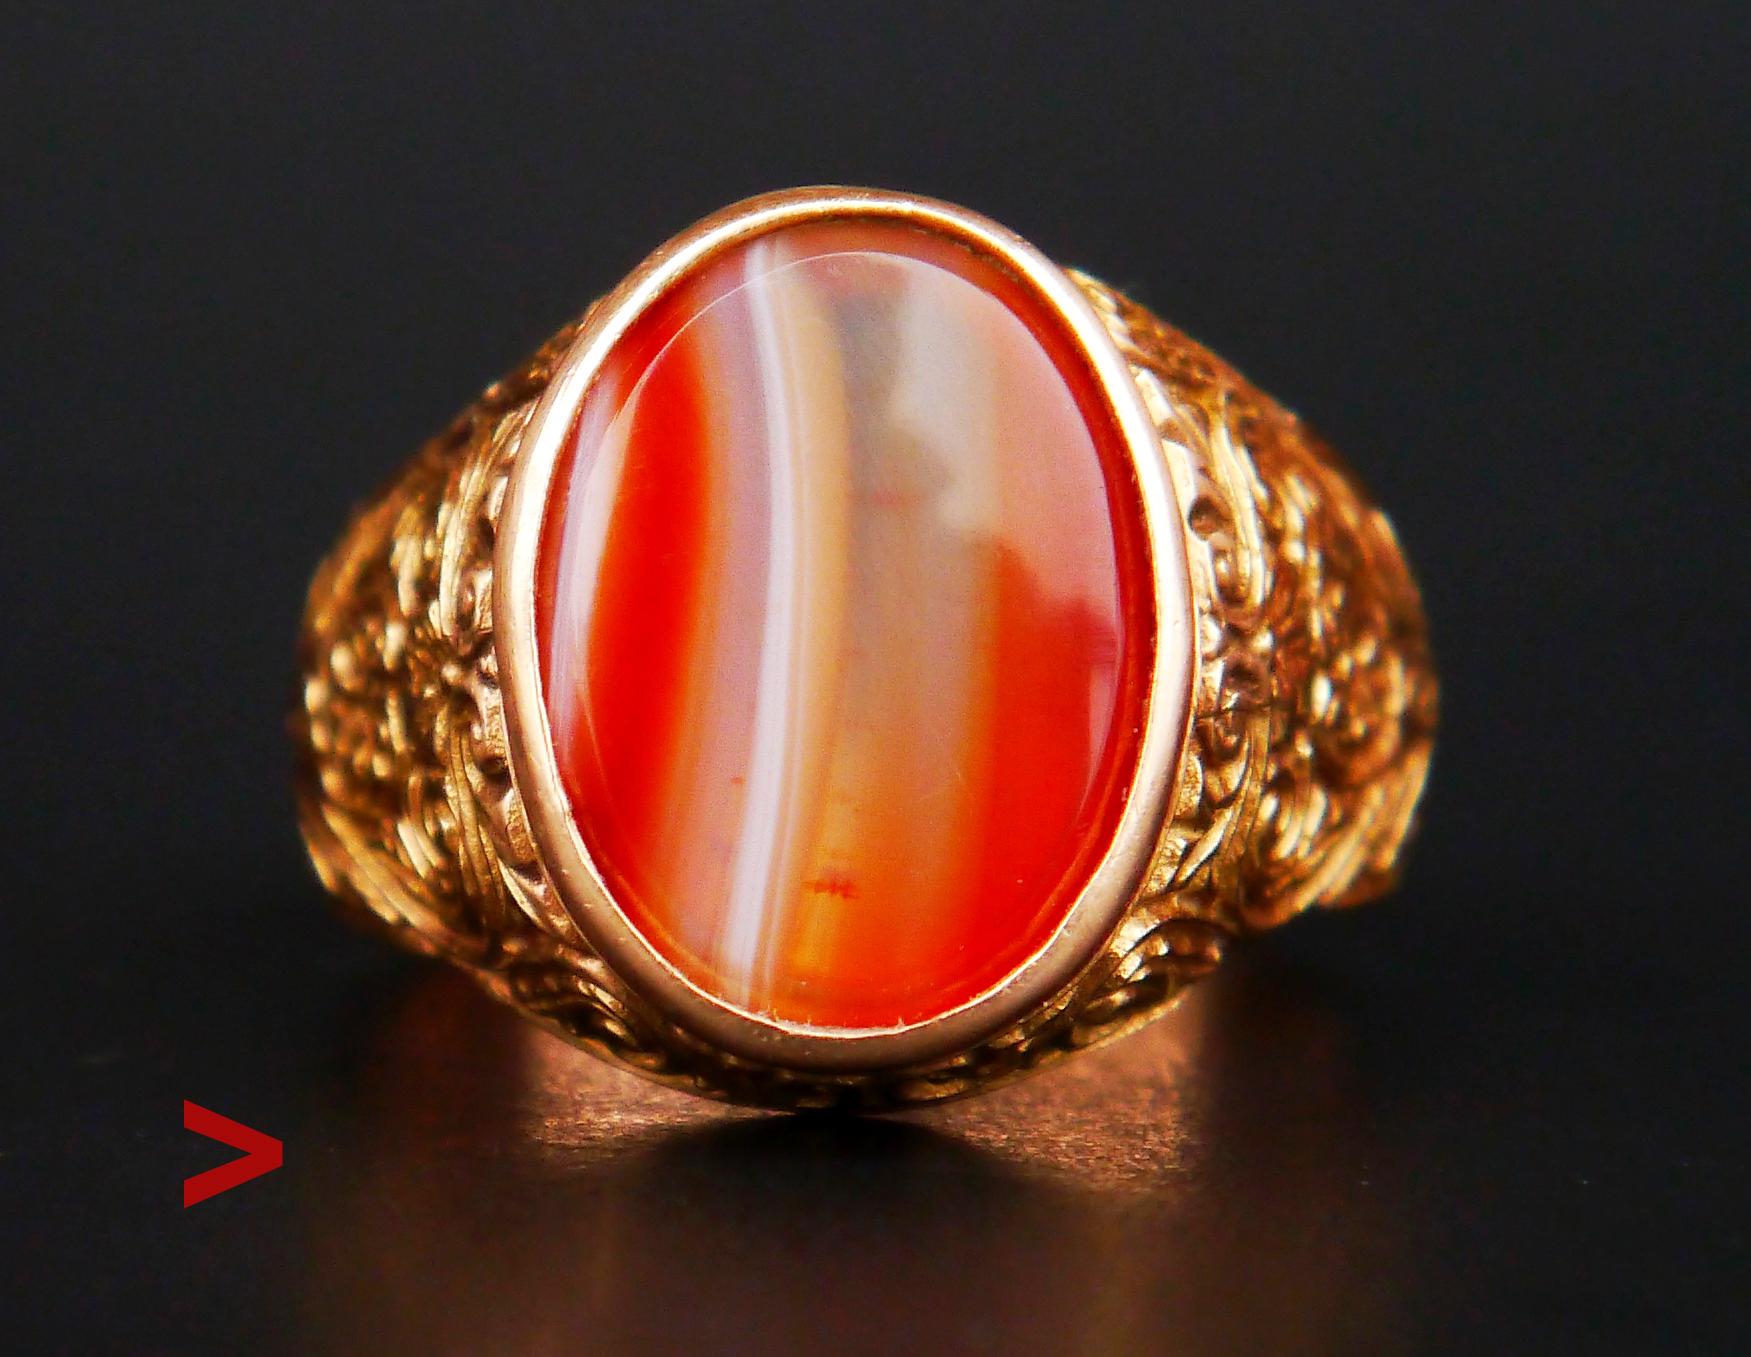 Bague ϟignet - ornée d'une plaque rouge polie sertie d'un anneau en Onyx rouge 15 mm x 12 mm x 4,3 mm avec dos ouvert / ca 9 ct. Cette charmante pierre ressemble à de la gelée tranchée avec des couches désamorcées de rouge foncé, d'orange, de jaune